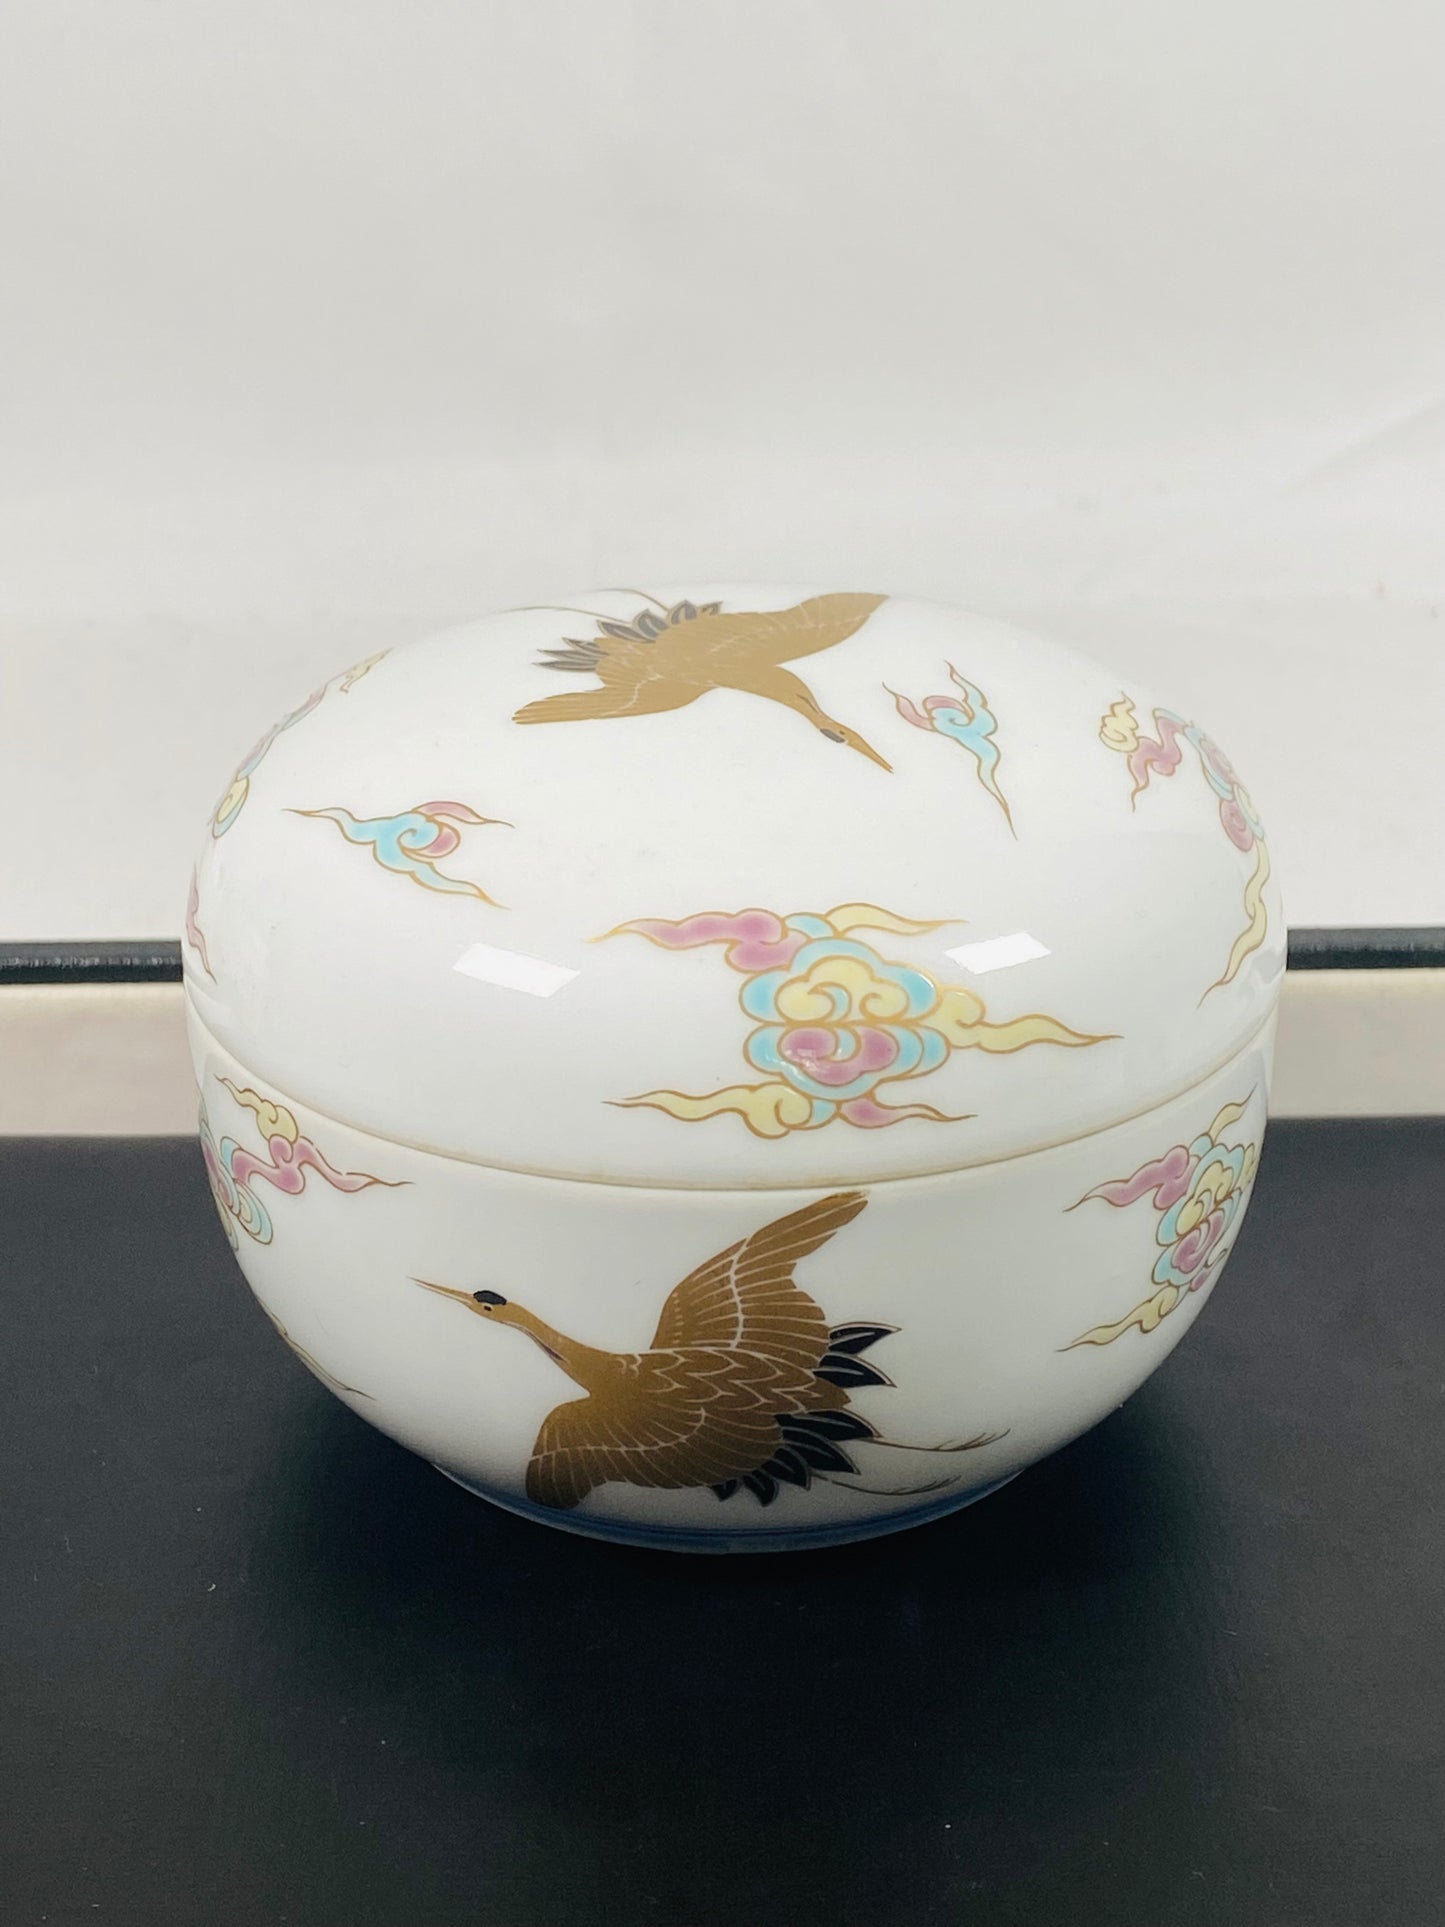 复古 20 世纪早期至中期日本深川瓷带盖小饰品盒，带有鹤和彩虹云